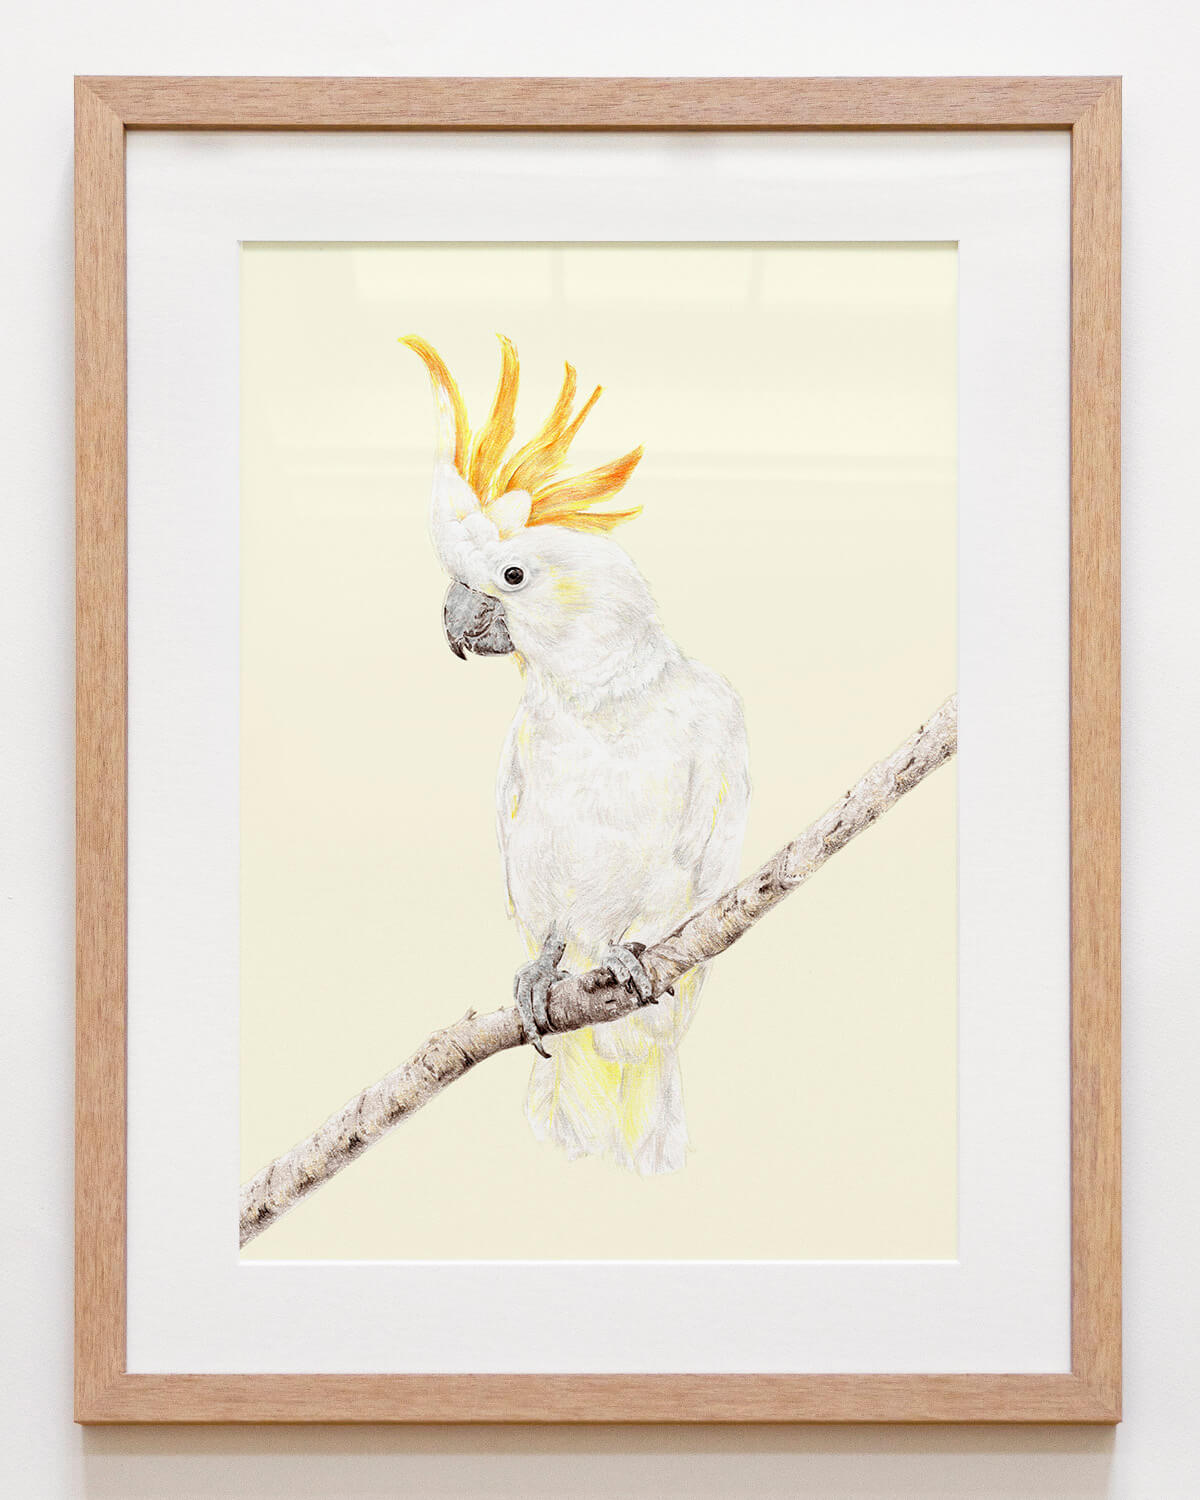 Framed bird art print of an Australian cockatoo